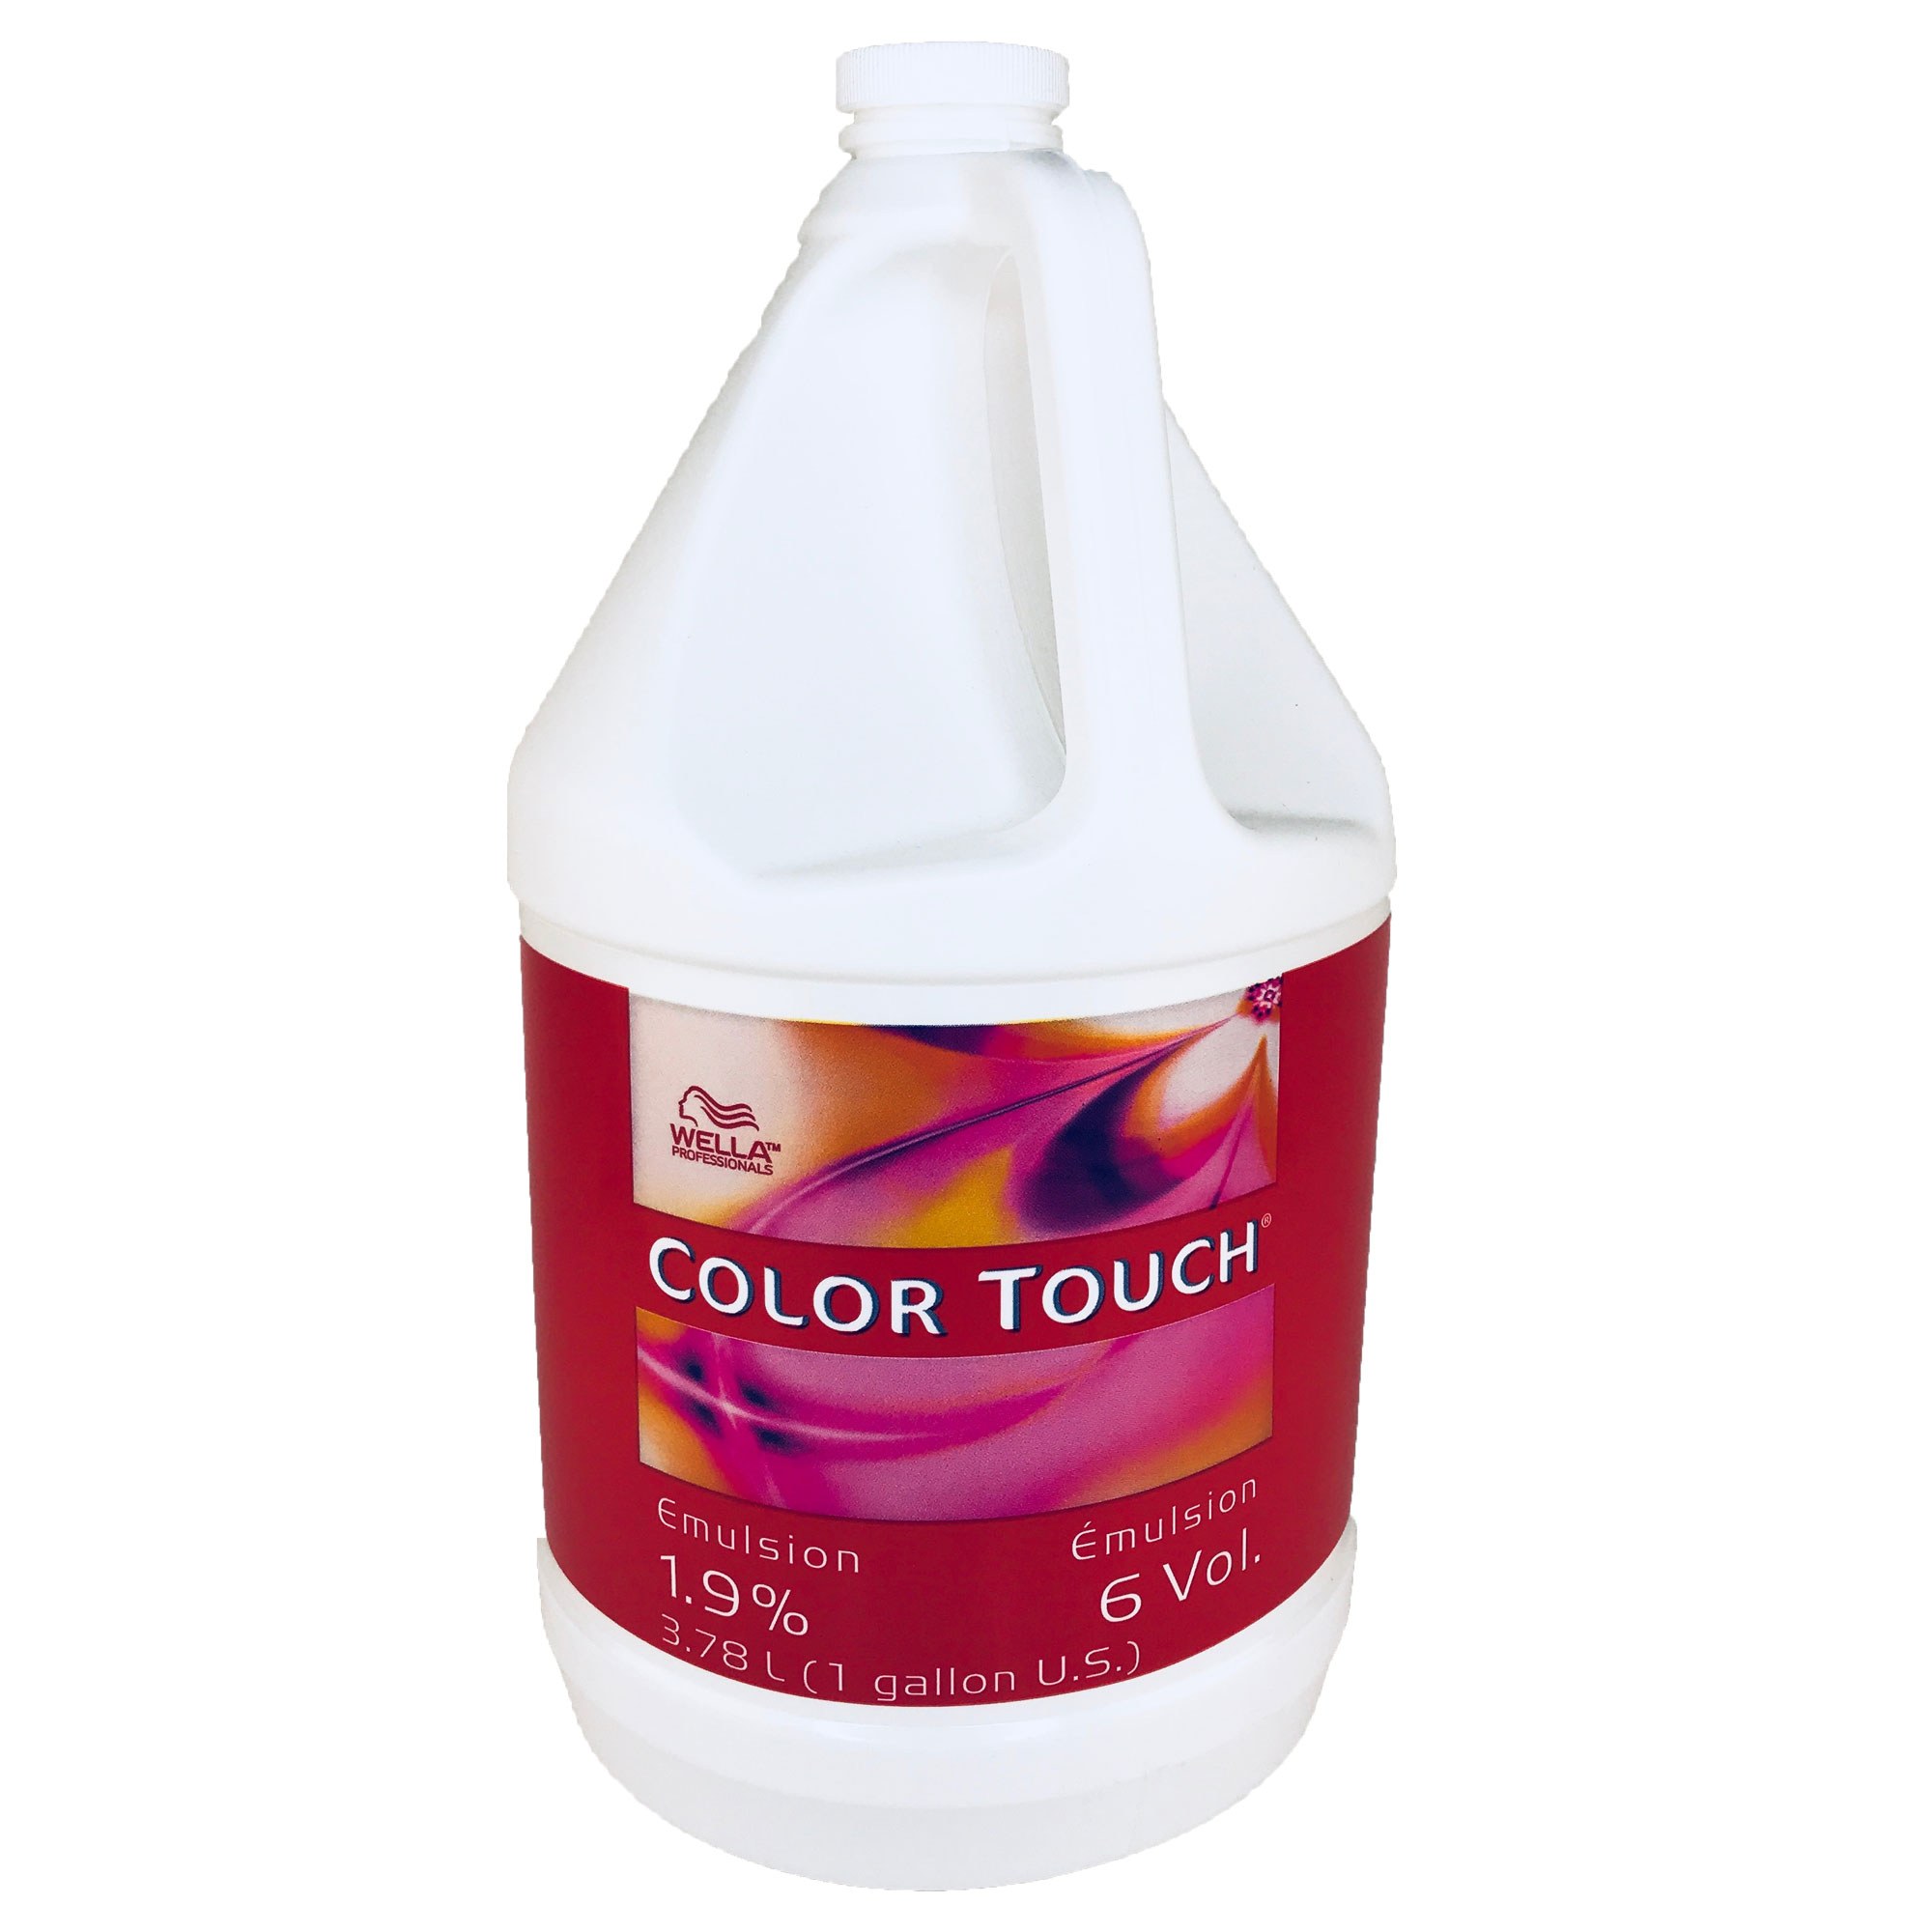 Wella Color Touch Developer: 6 Vol